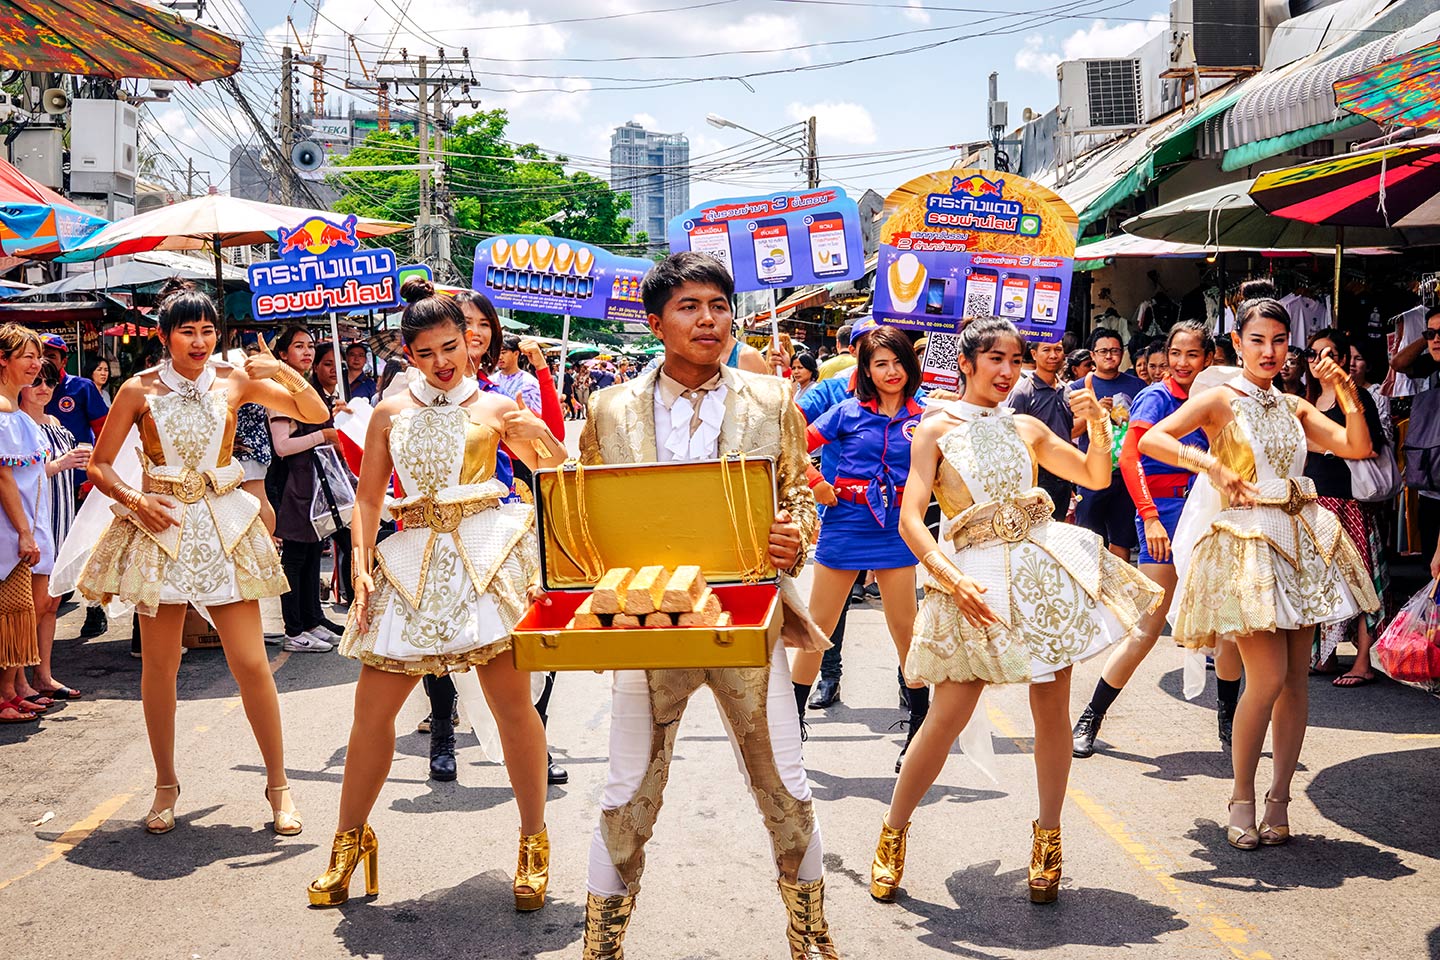  Les promoteurs de Red Bull au Marché du week-end de Chatuchak à Bangkok 